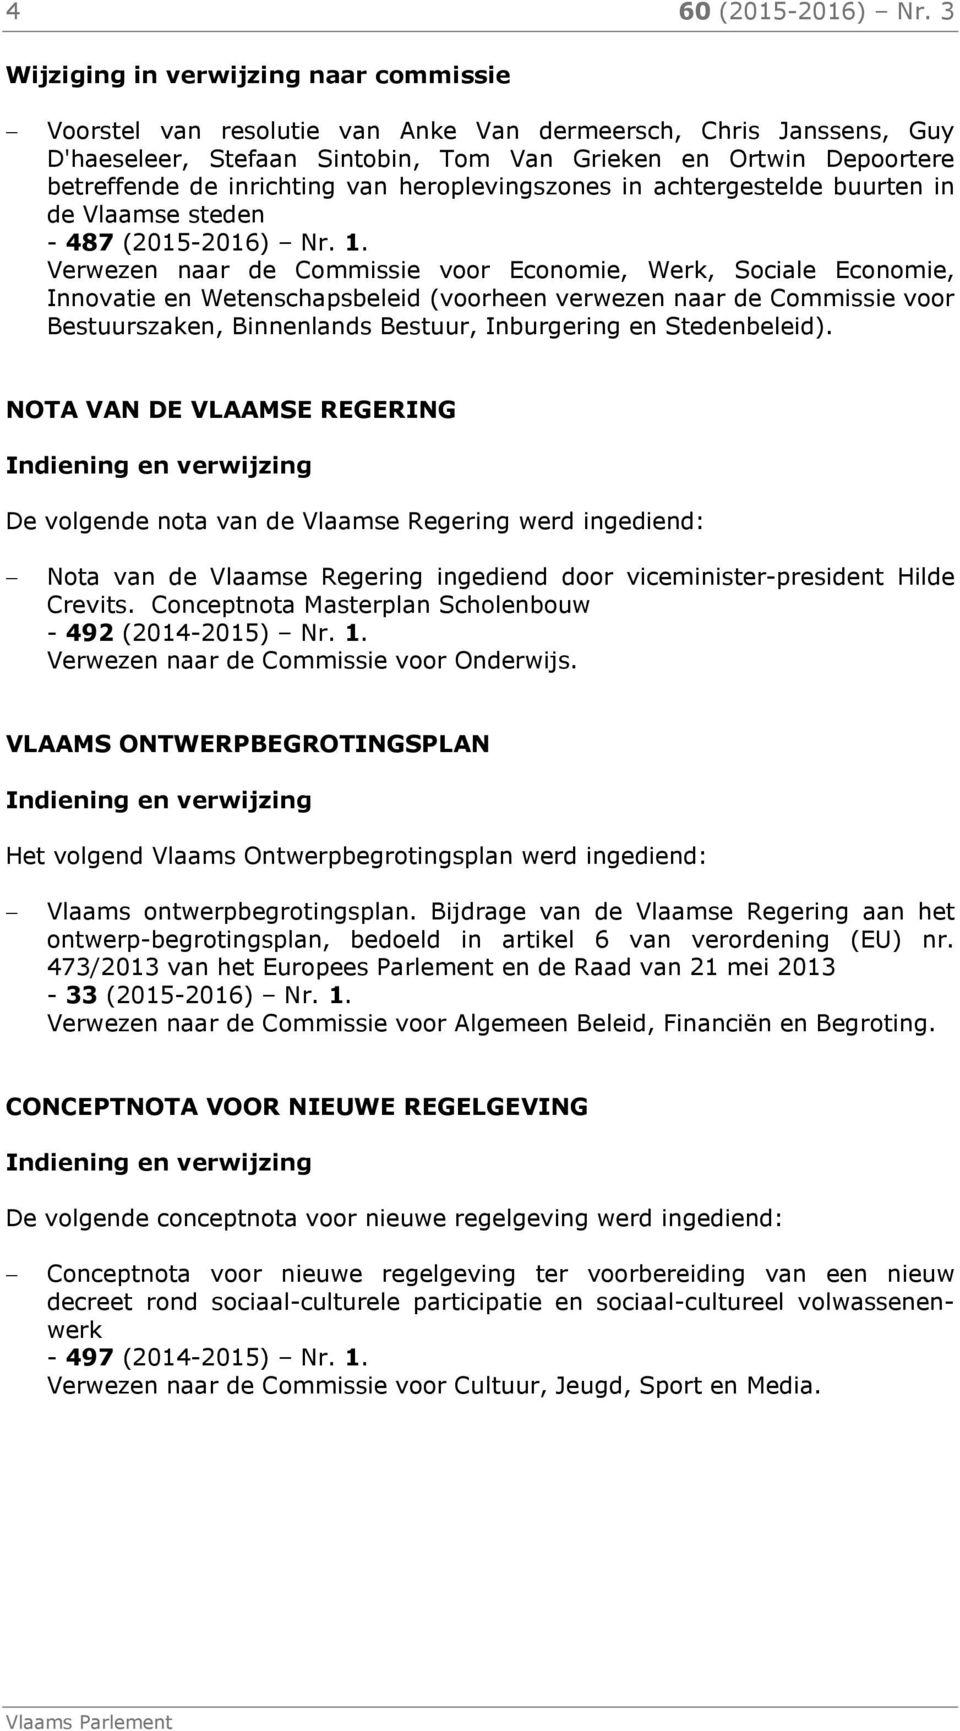 inrichting van heroplevingszones in achtergestelde buurten in de Vlaamse steden - 487 (2015-2016) Nr. 1.